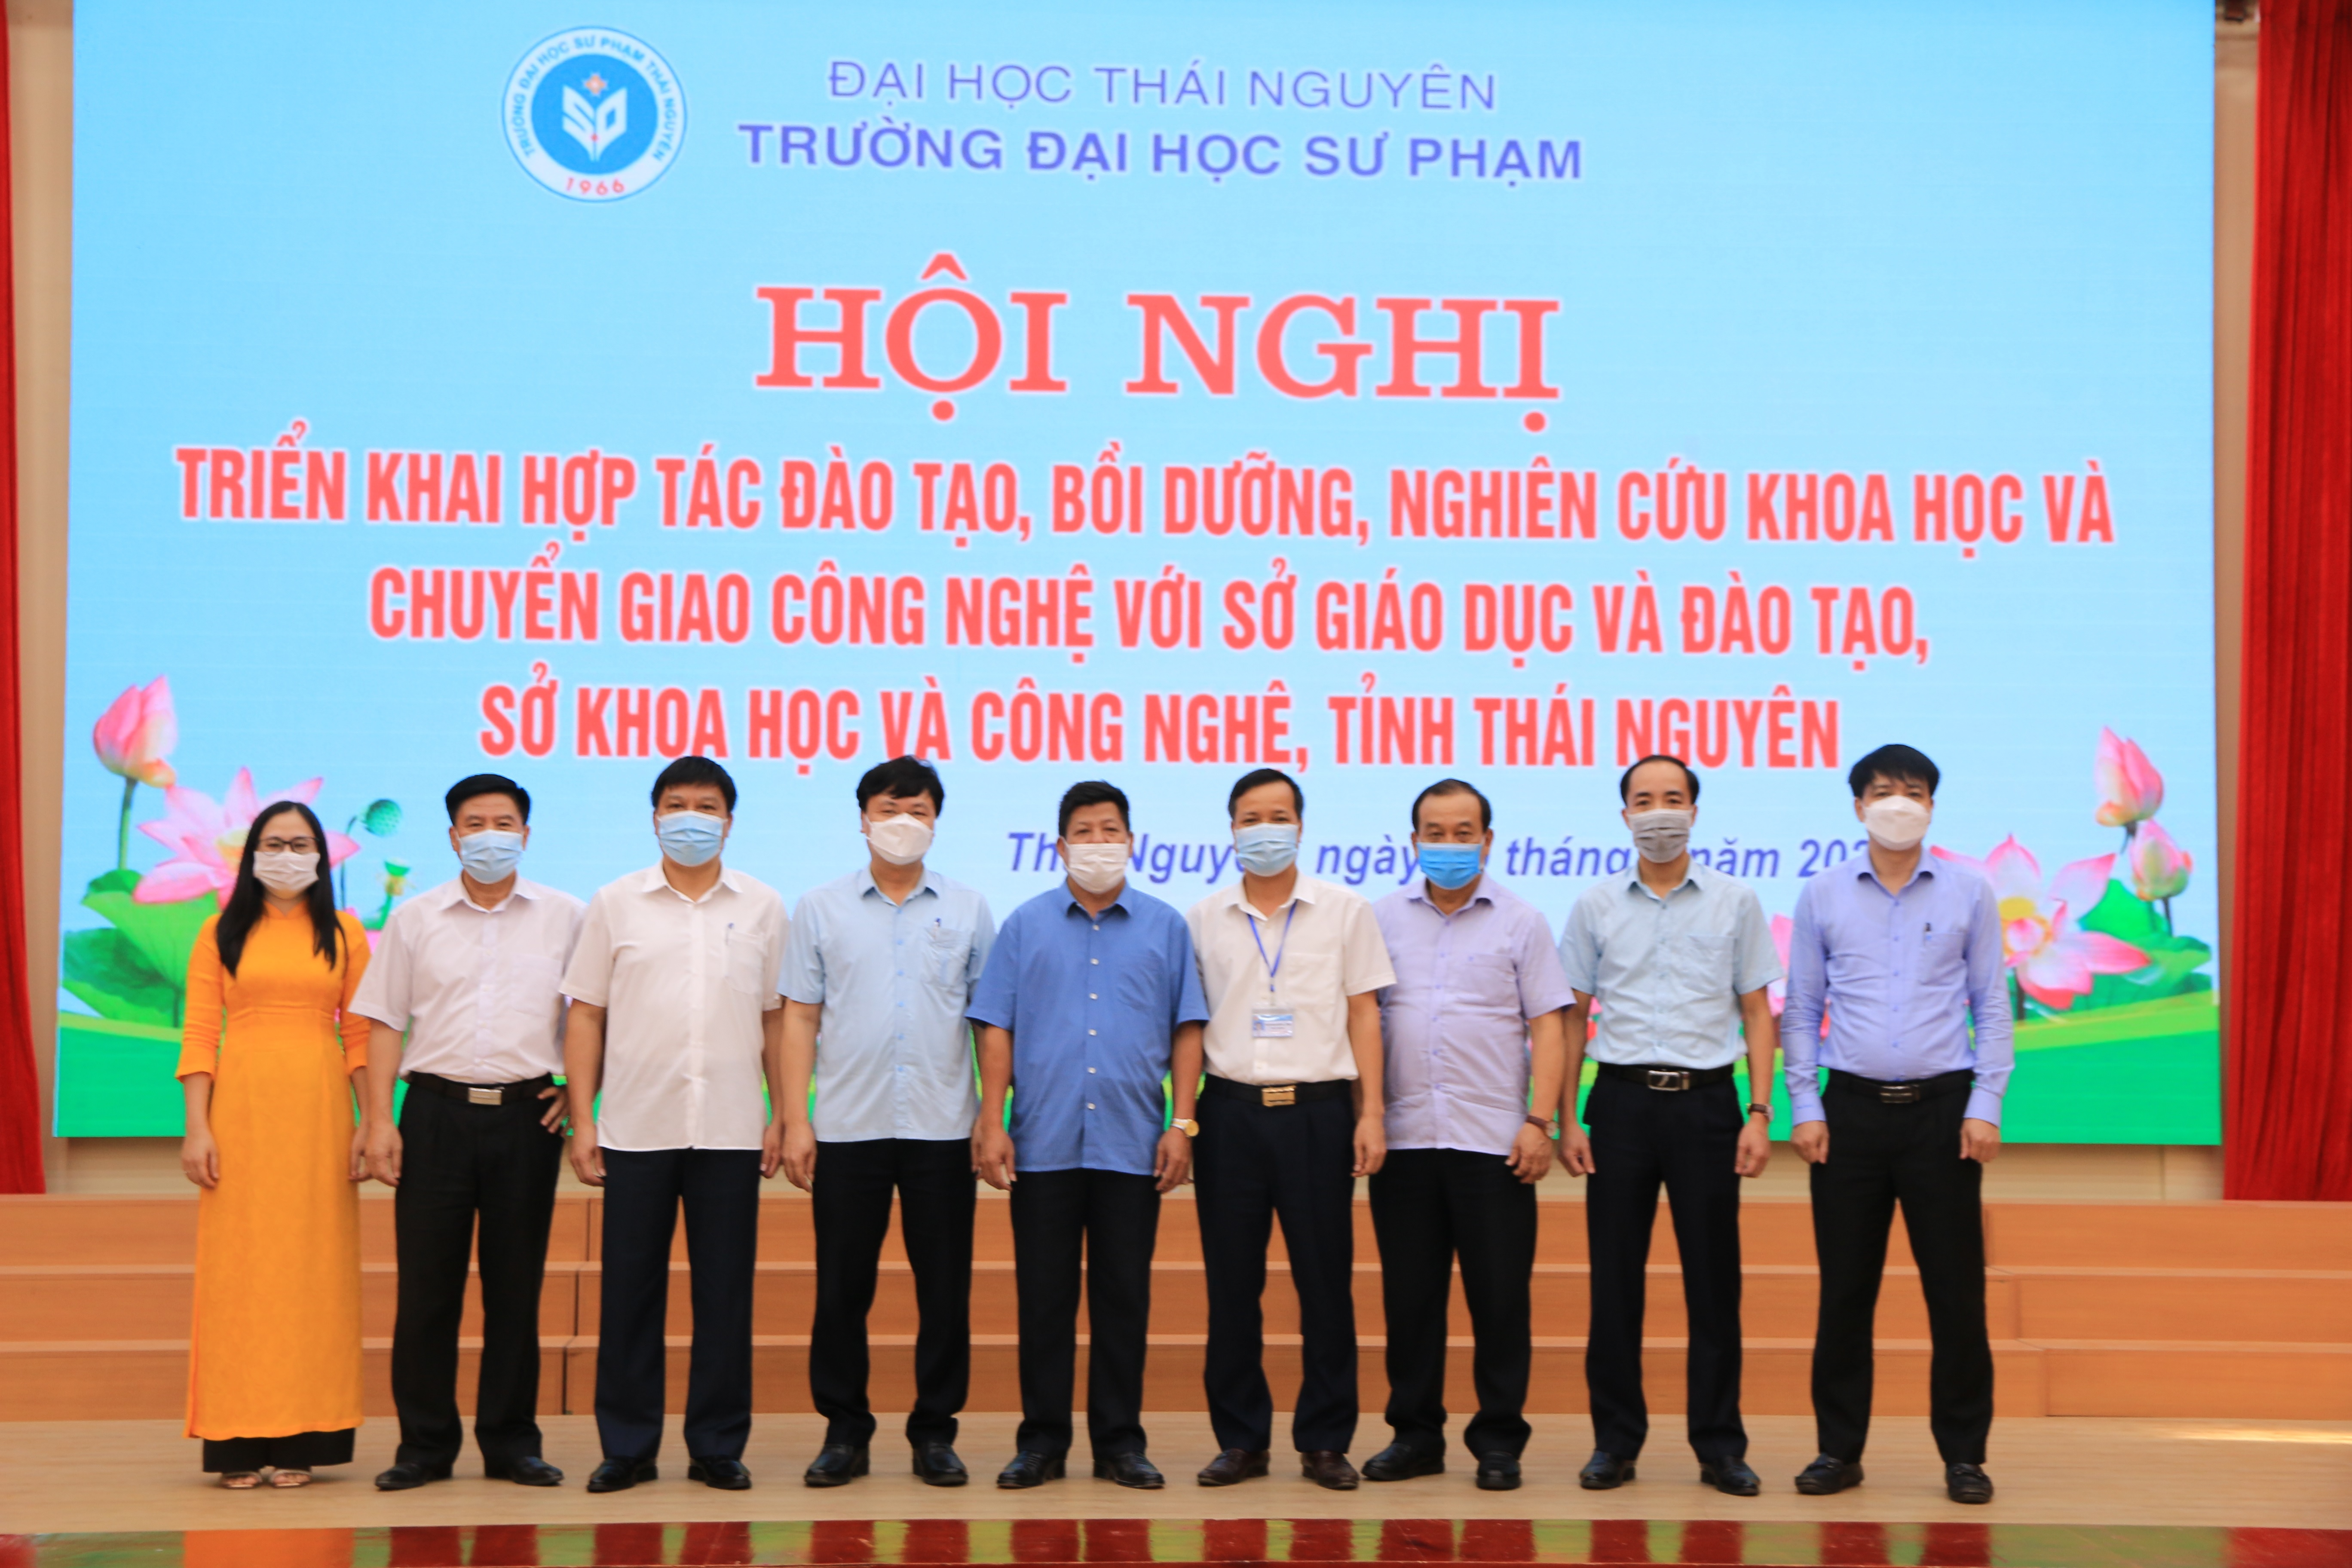 Định hướng triển khai hợp tác đào tạo, bồi dưỡng, nghiên cứu khoa học tại Trường Đại học Sư phạm- Đại học Thái Nguyên